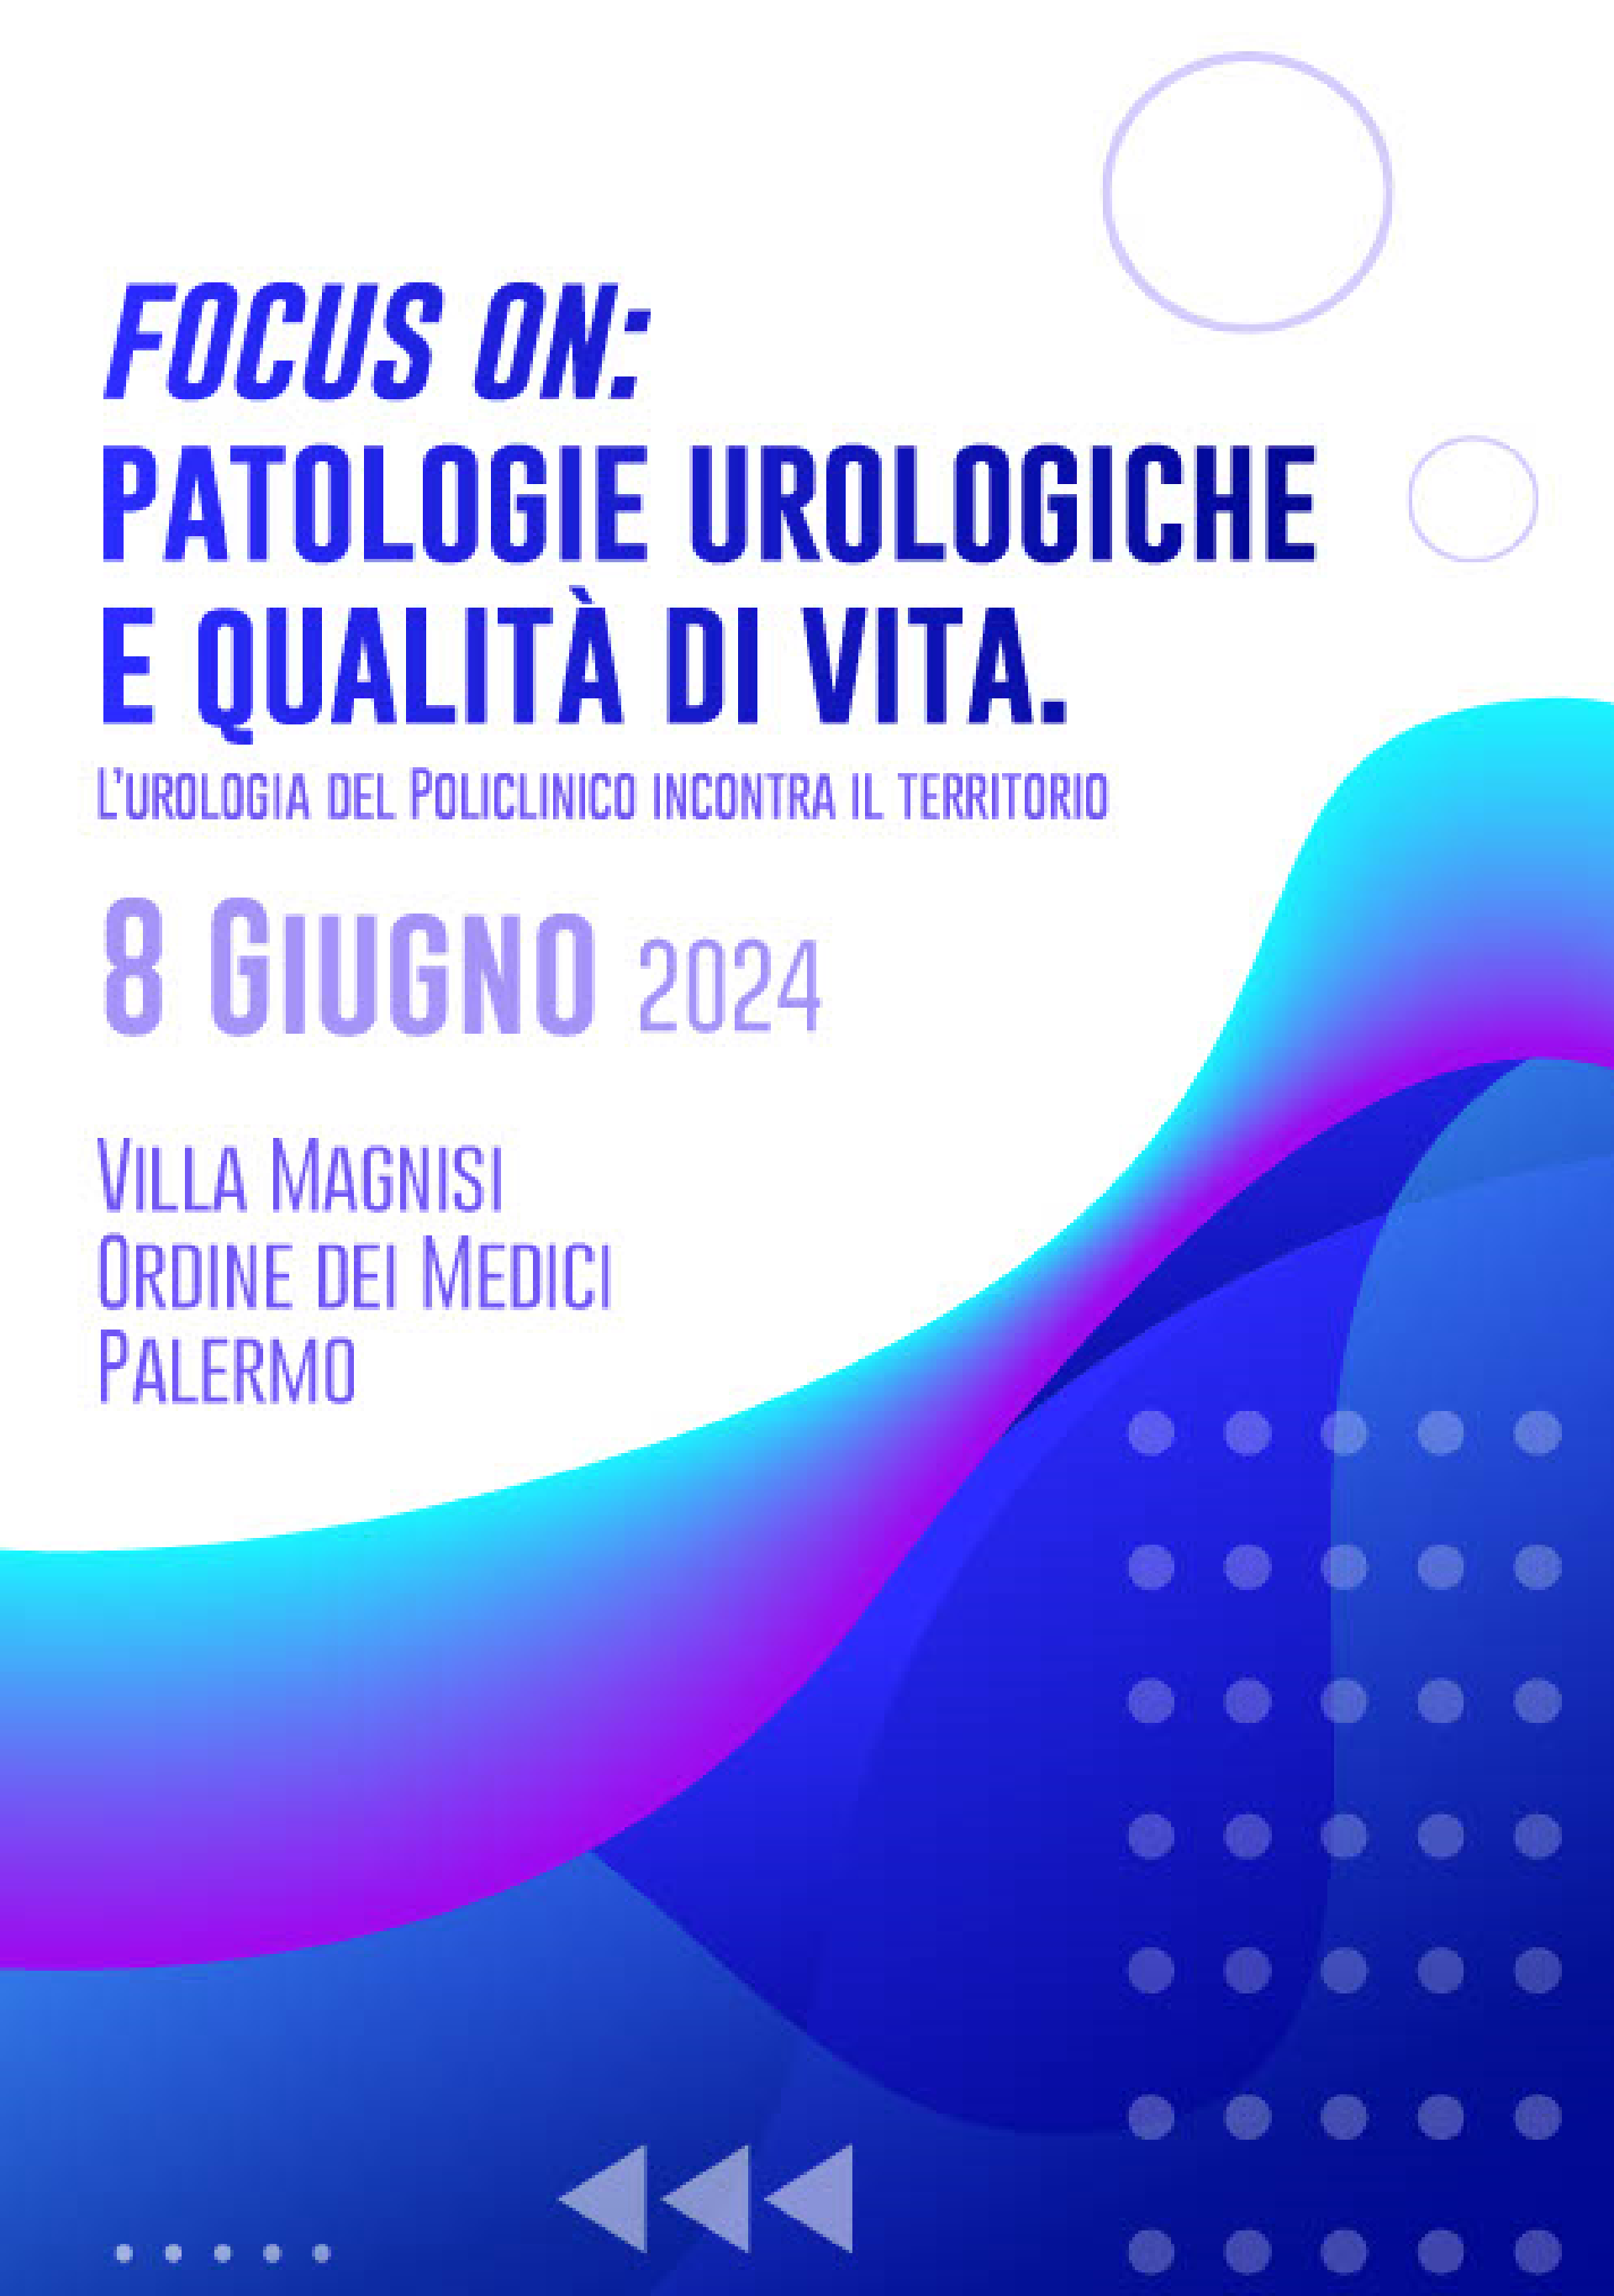 Focus on: patologie urologiche e qualità di vita; L’urologia del Policlinico incontra il territorio